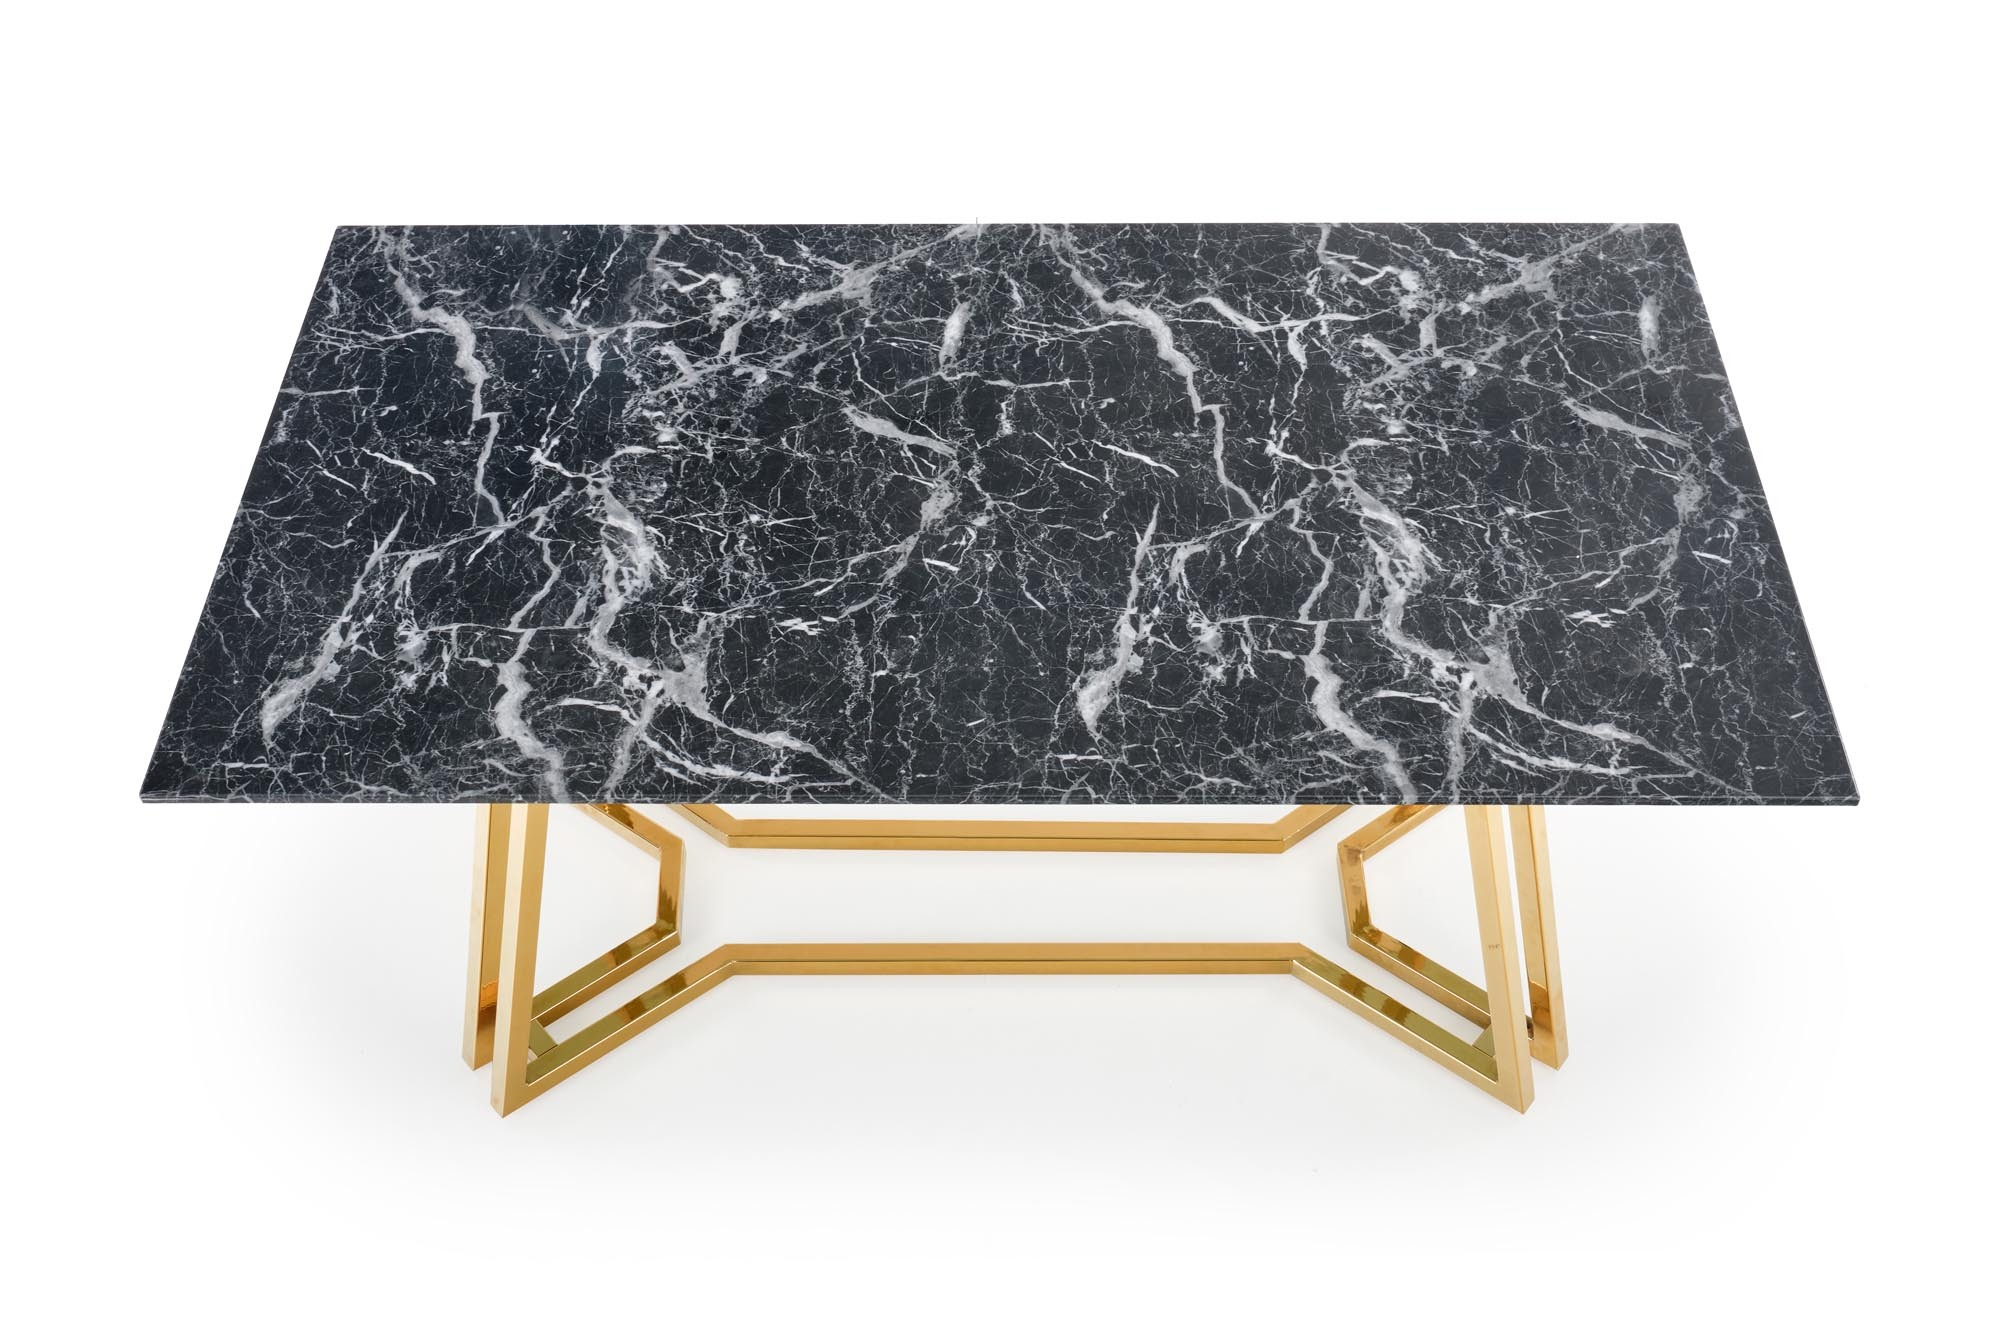 KONAMI stół, kolor: blat - czarny marmur, nogi - złoty